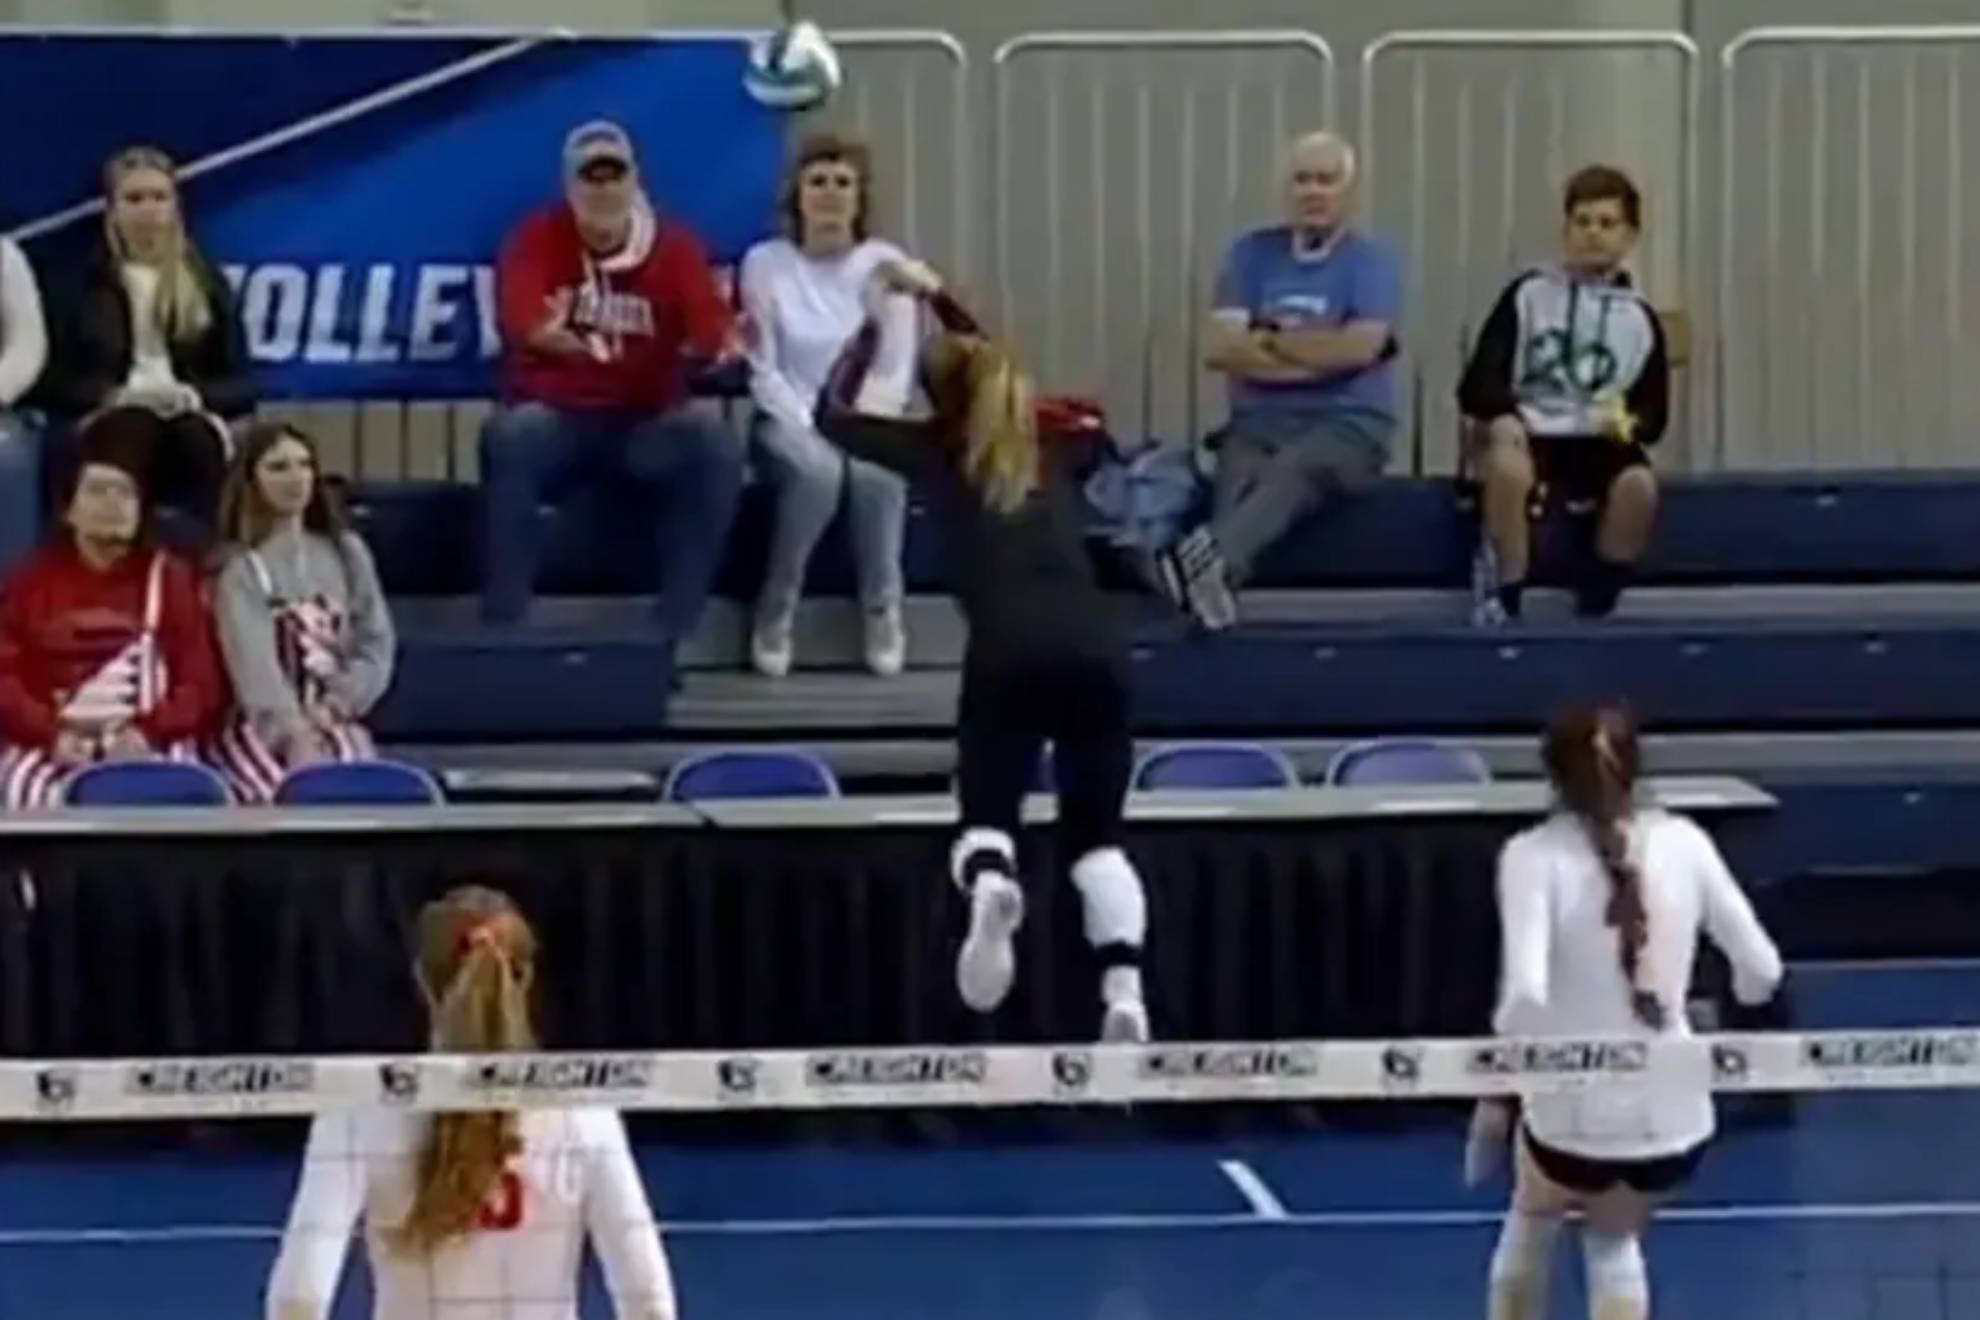 La increíble jugada que enloquece al mundo del voleibol: se tira sobre una mesa y su equipo gana el punto